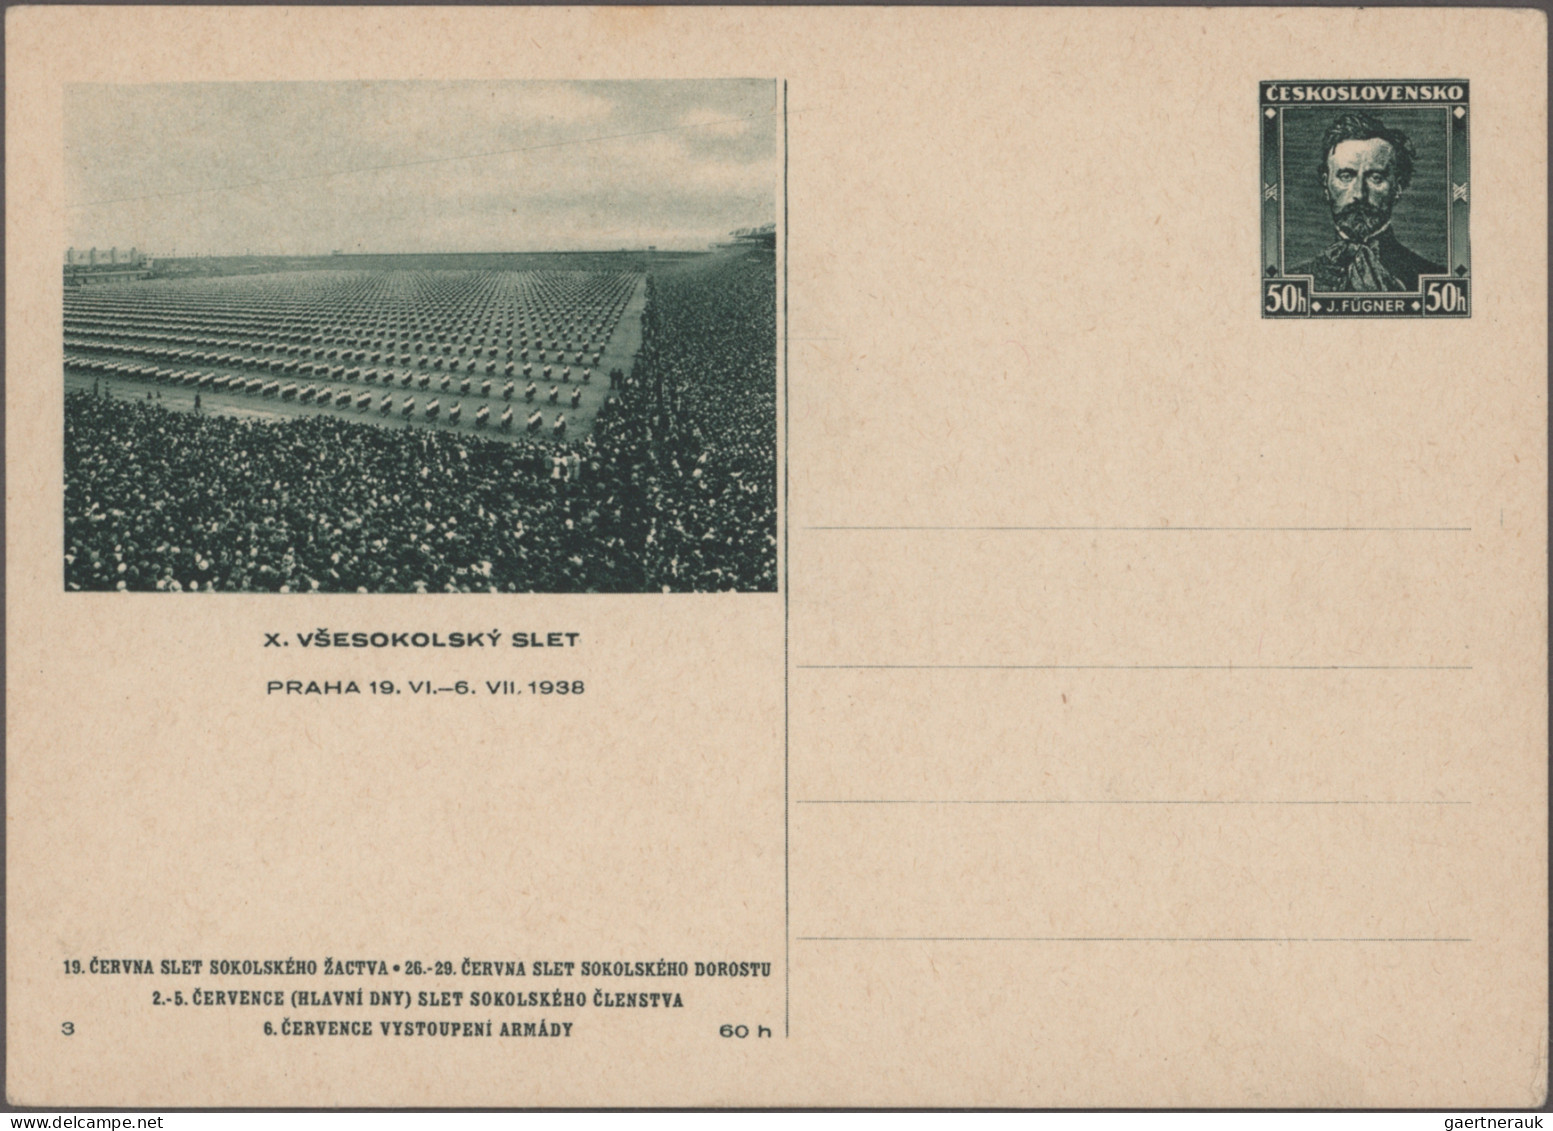 Czechoslowakia - postal stationery: 1928-1945 - postal stationery picture postca